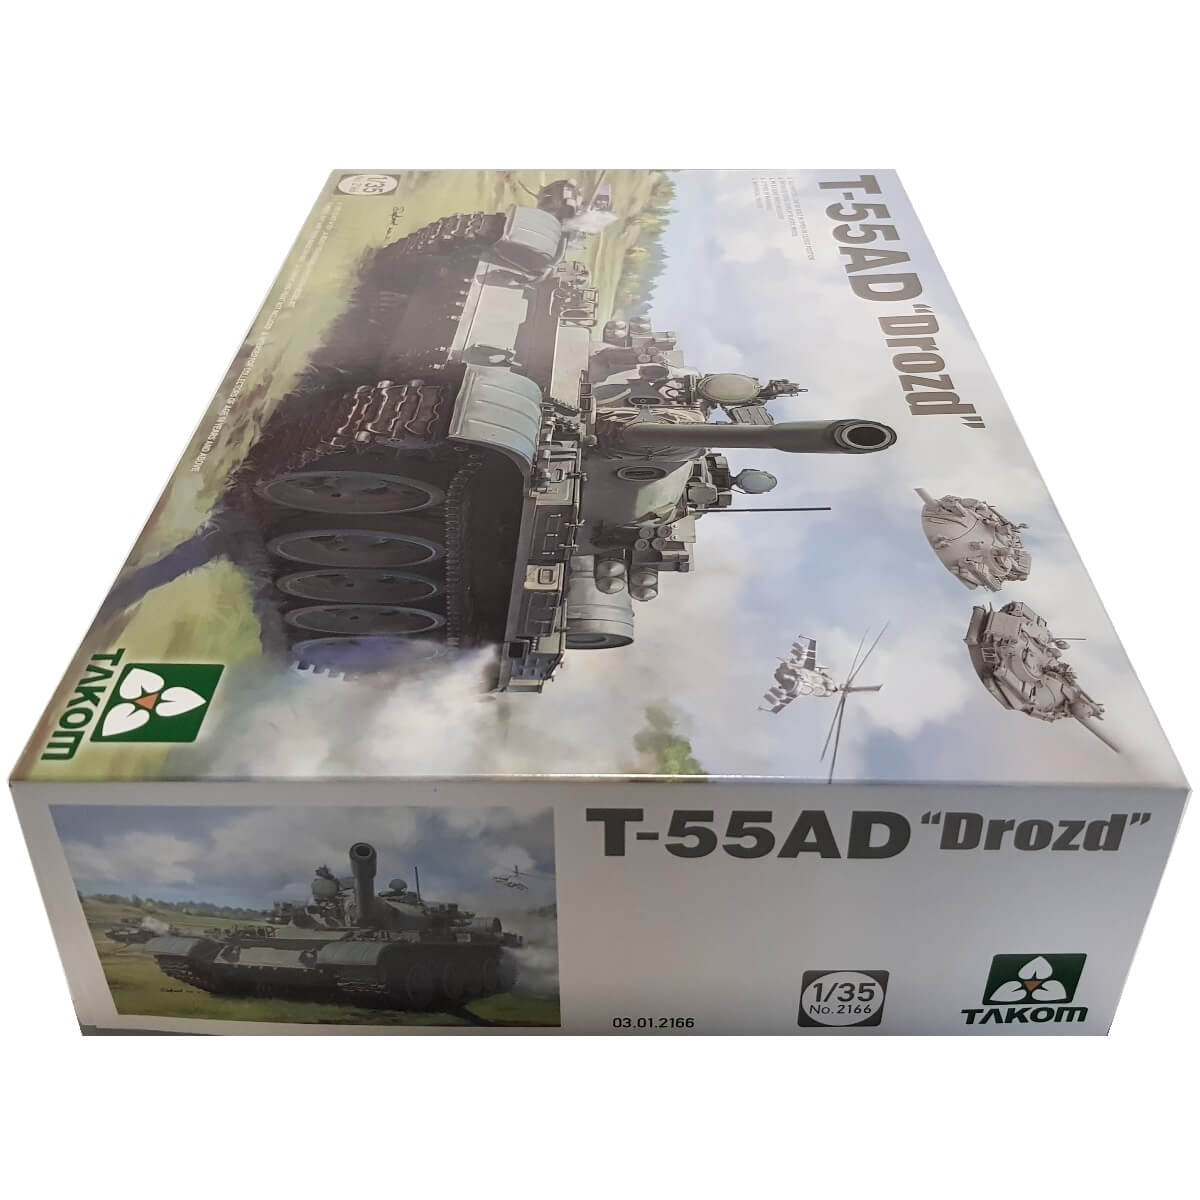 1:35 T-55AD "Drozd" - TAKOM